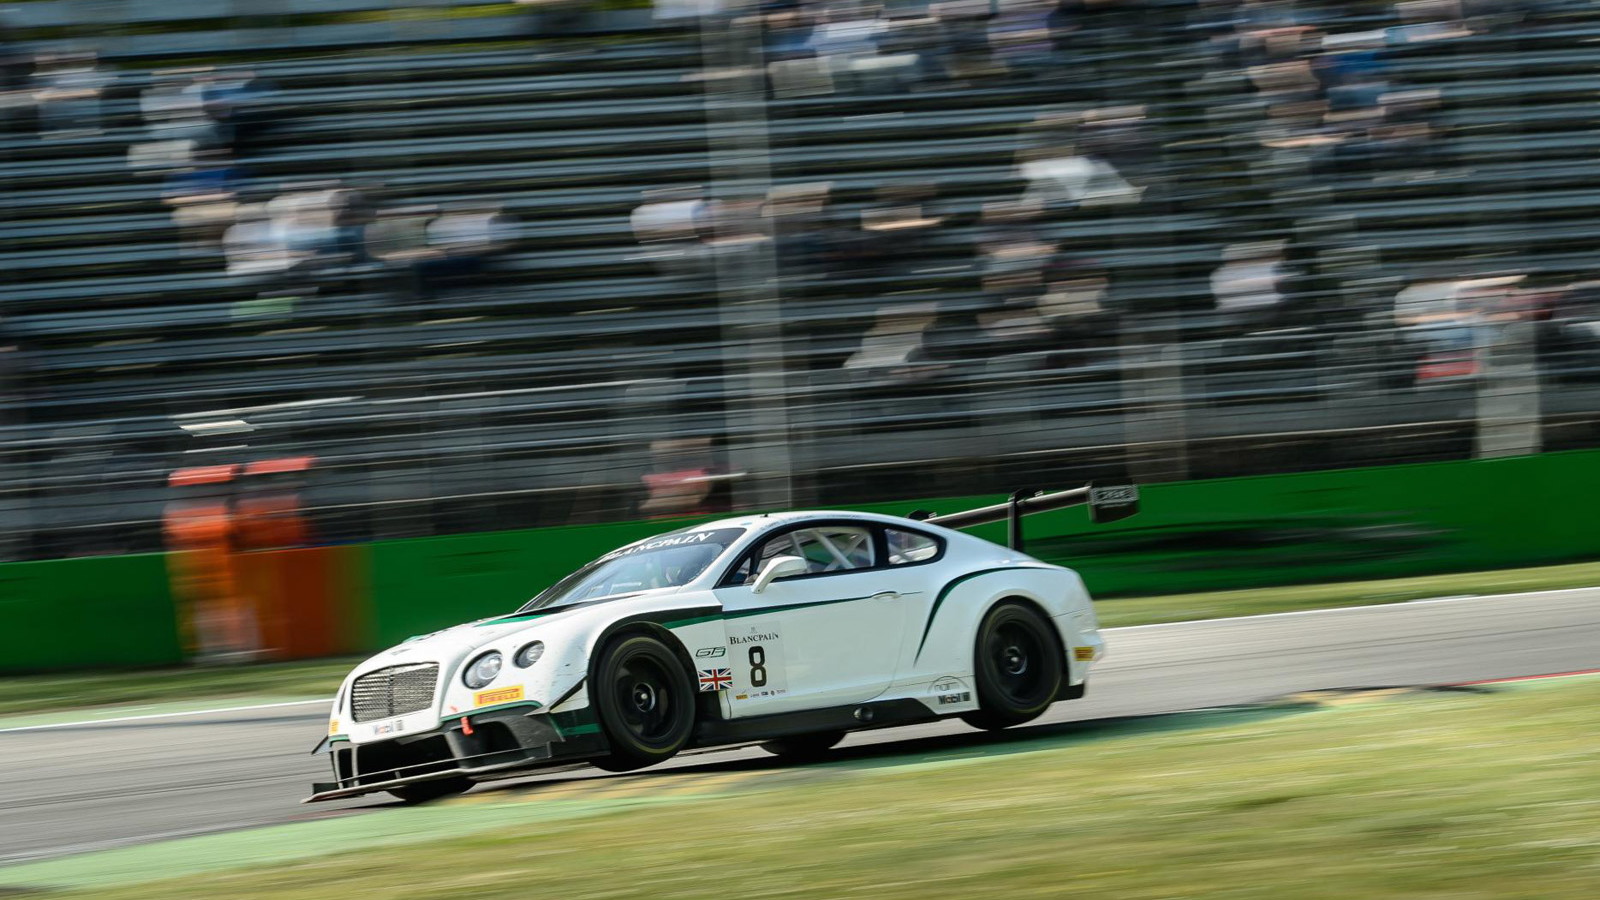 2014 Bentley Continental GT race car of Team M-Sport Bentley